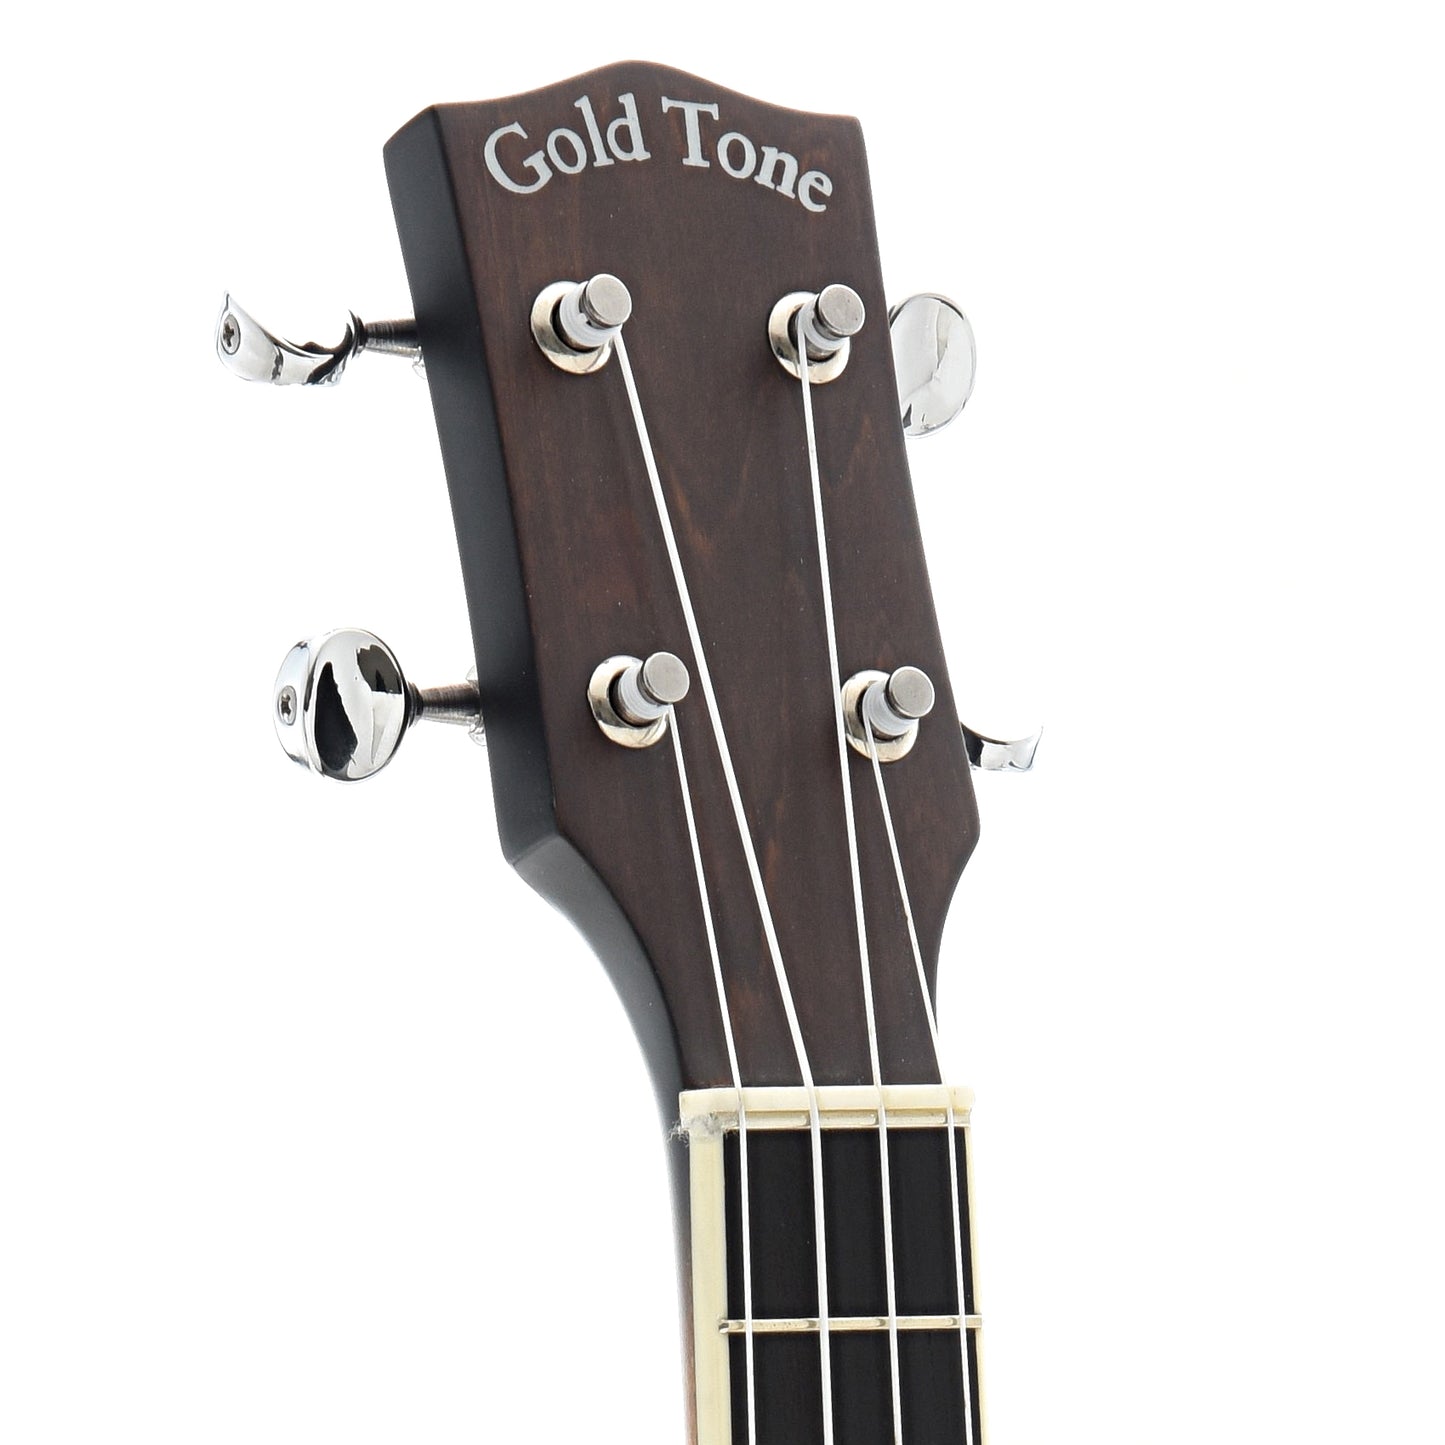 Image 6 of Gold Tone Concert Banjo Ukulele & Case - SKU# GTBUC : Product Type Banjo Ukuleles : Elderly Instruments